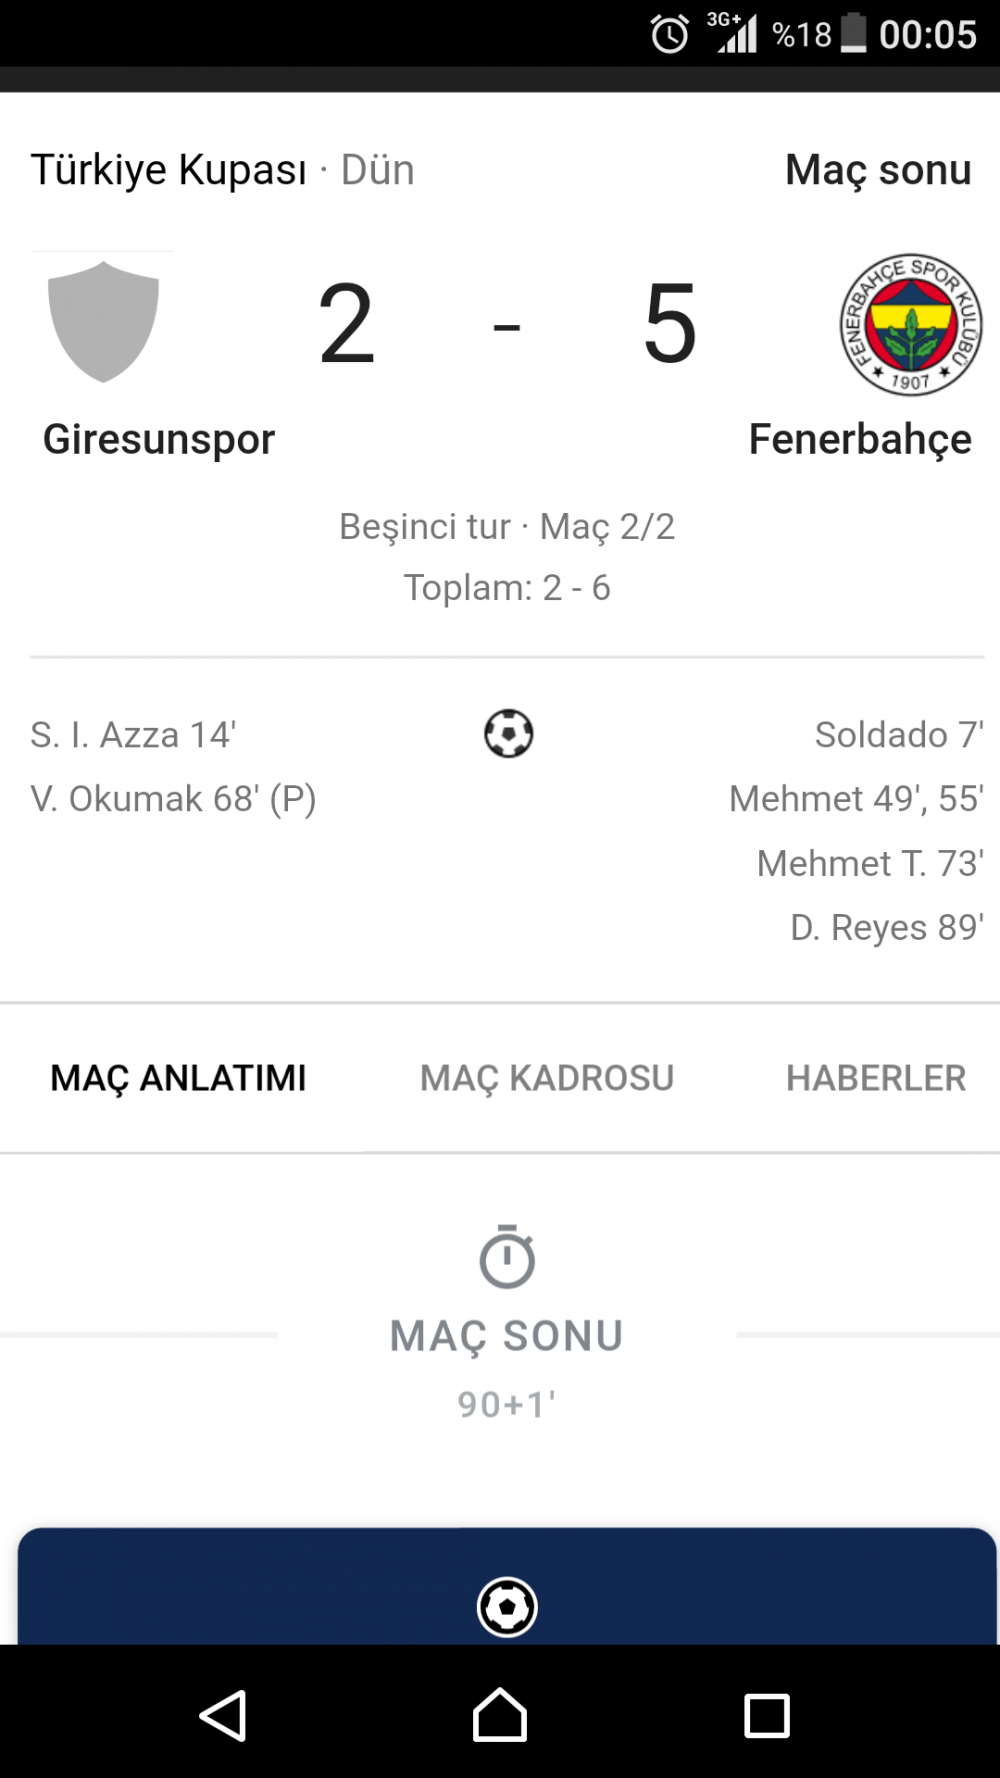 Fenerbahçe Türkiye kupasındaki son maçını 5 - 2 gibi farklı bir skorla kazandı.